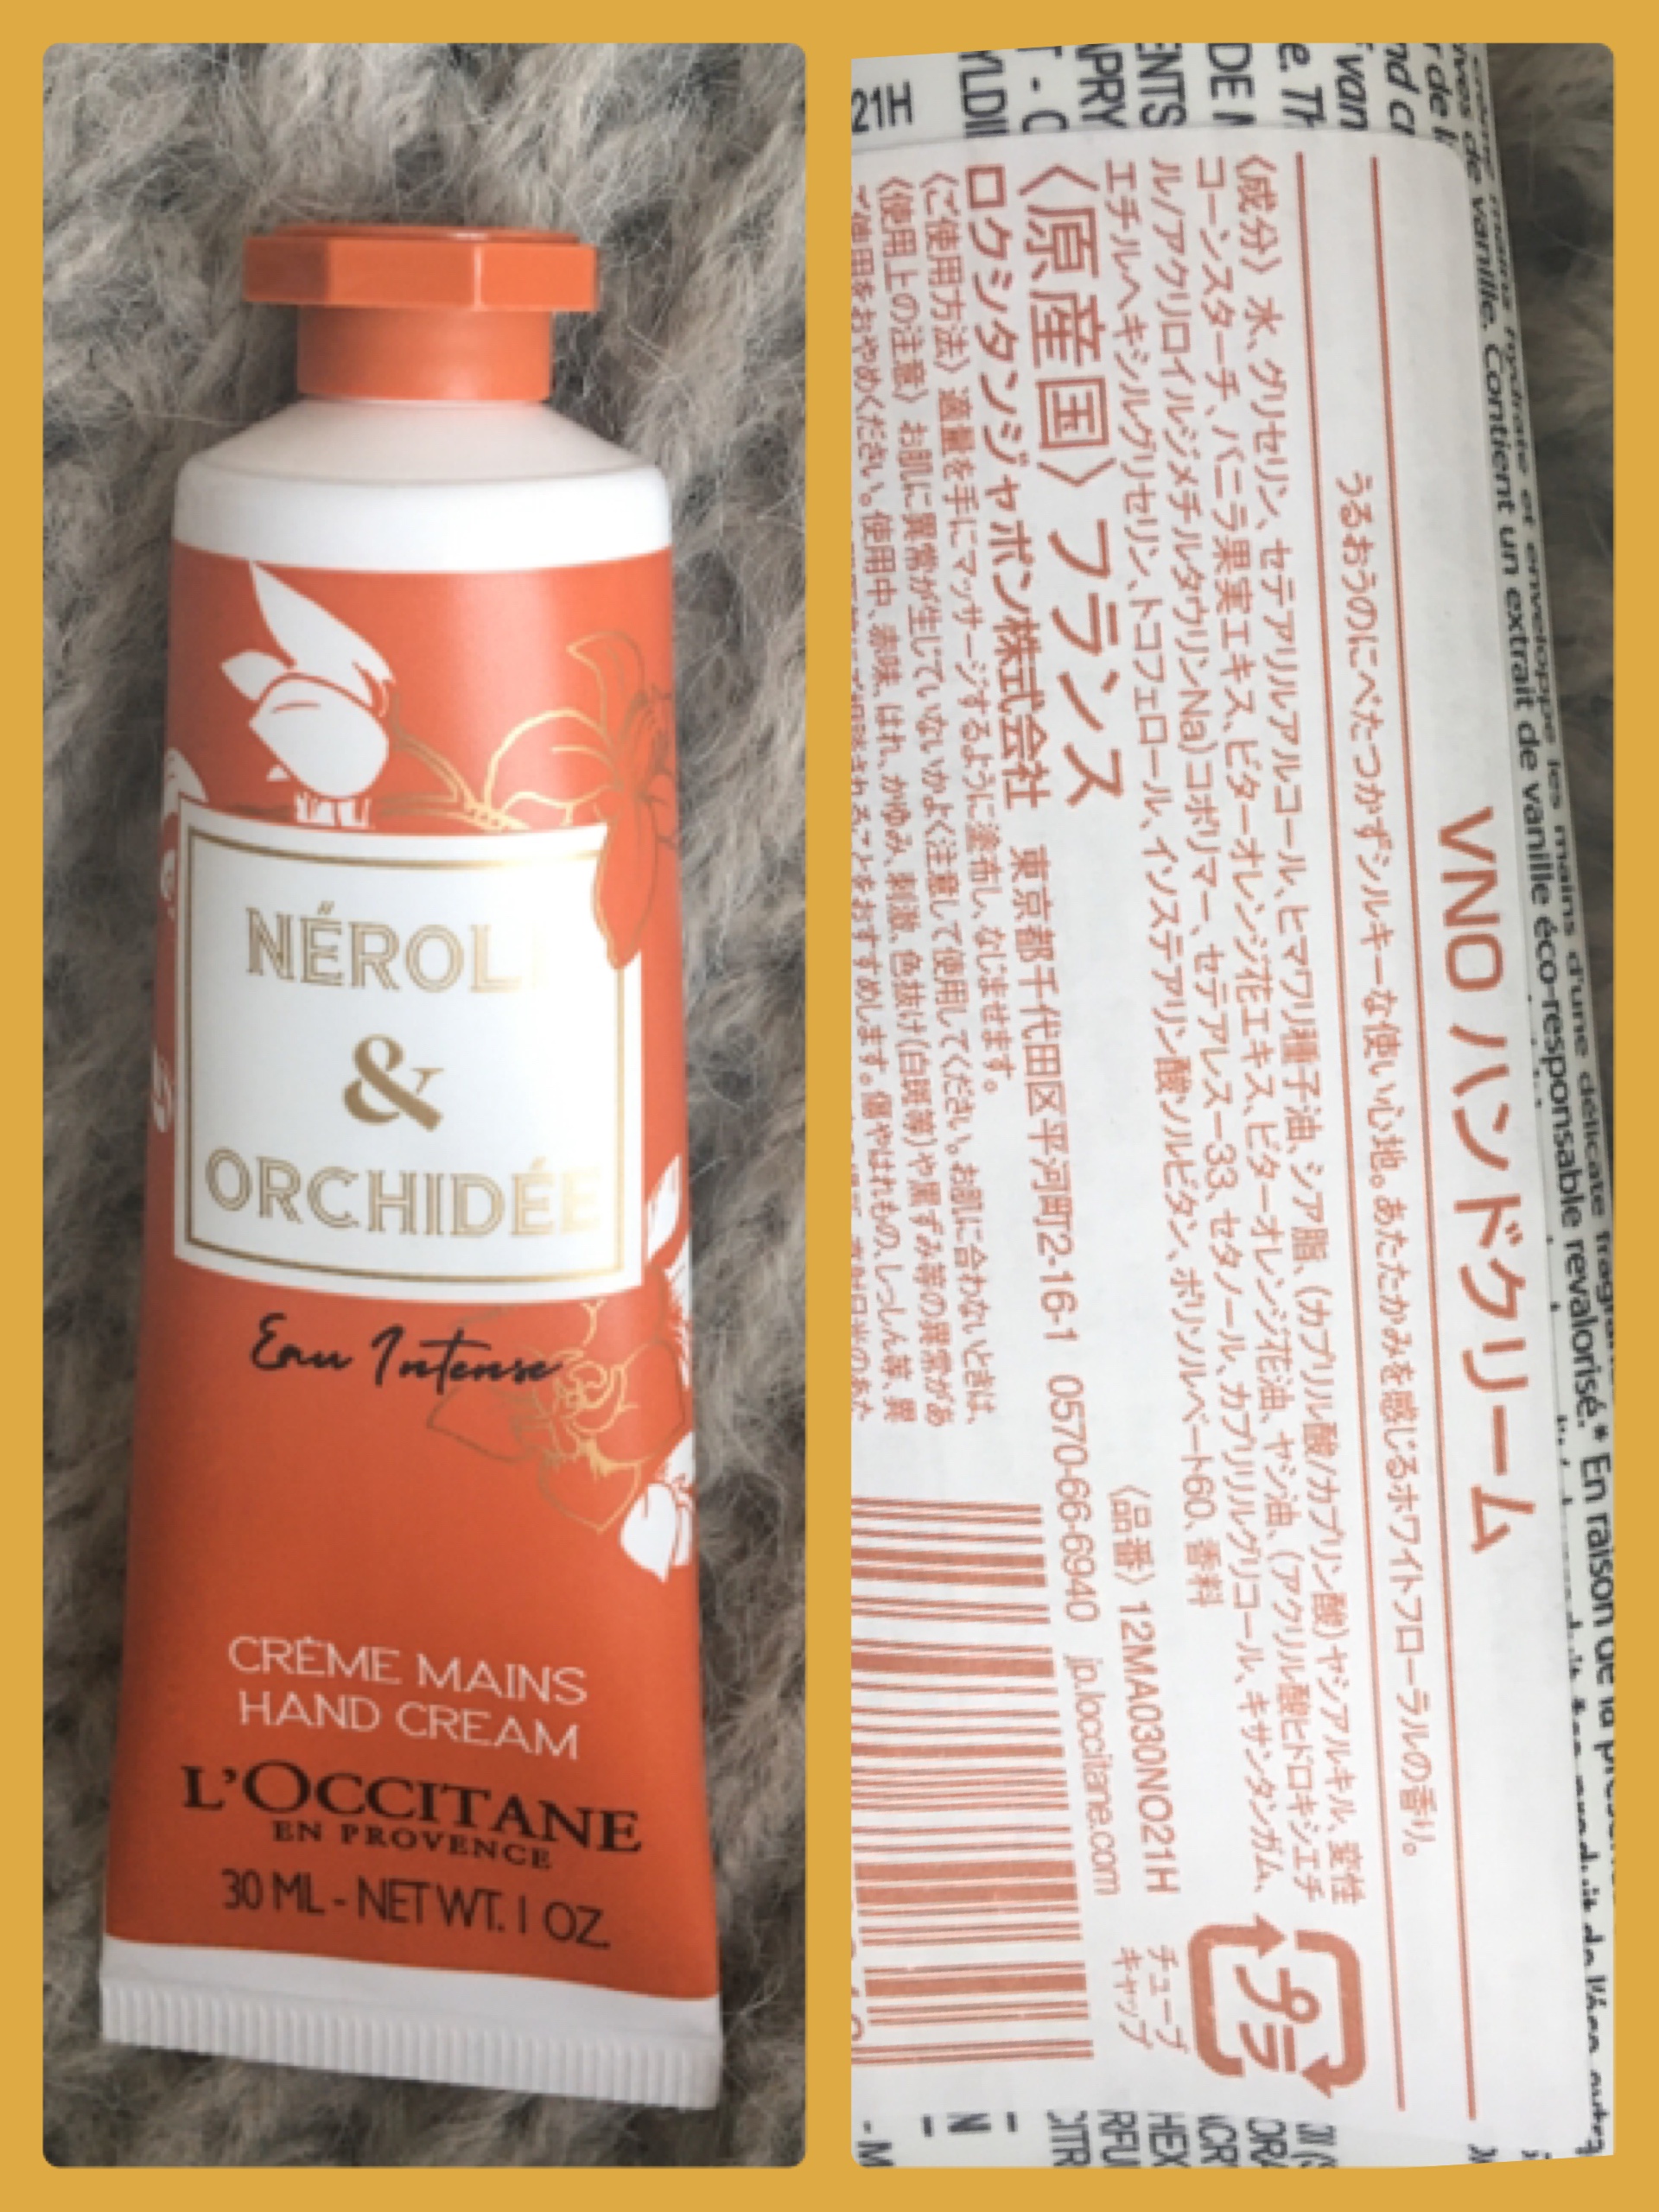 ロクシタン / グレースオーキデ プレミアムハンドクリームの公式商品 